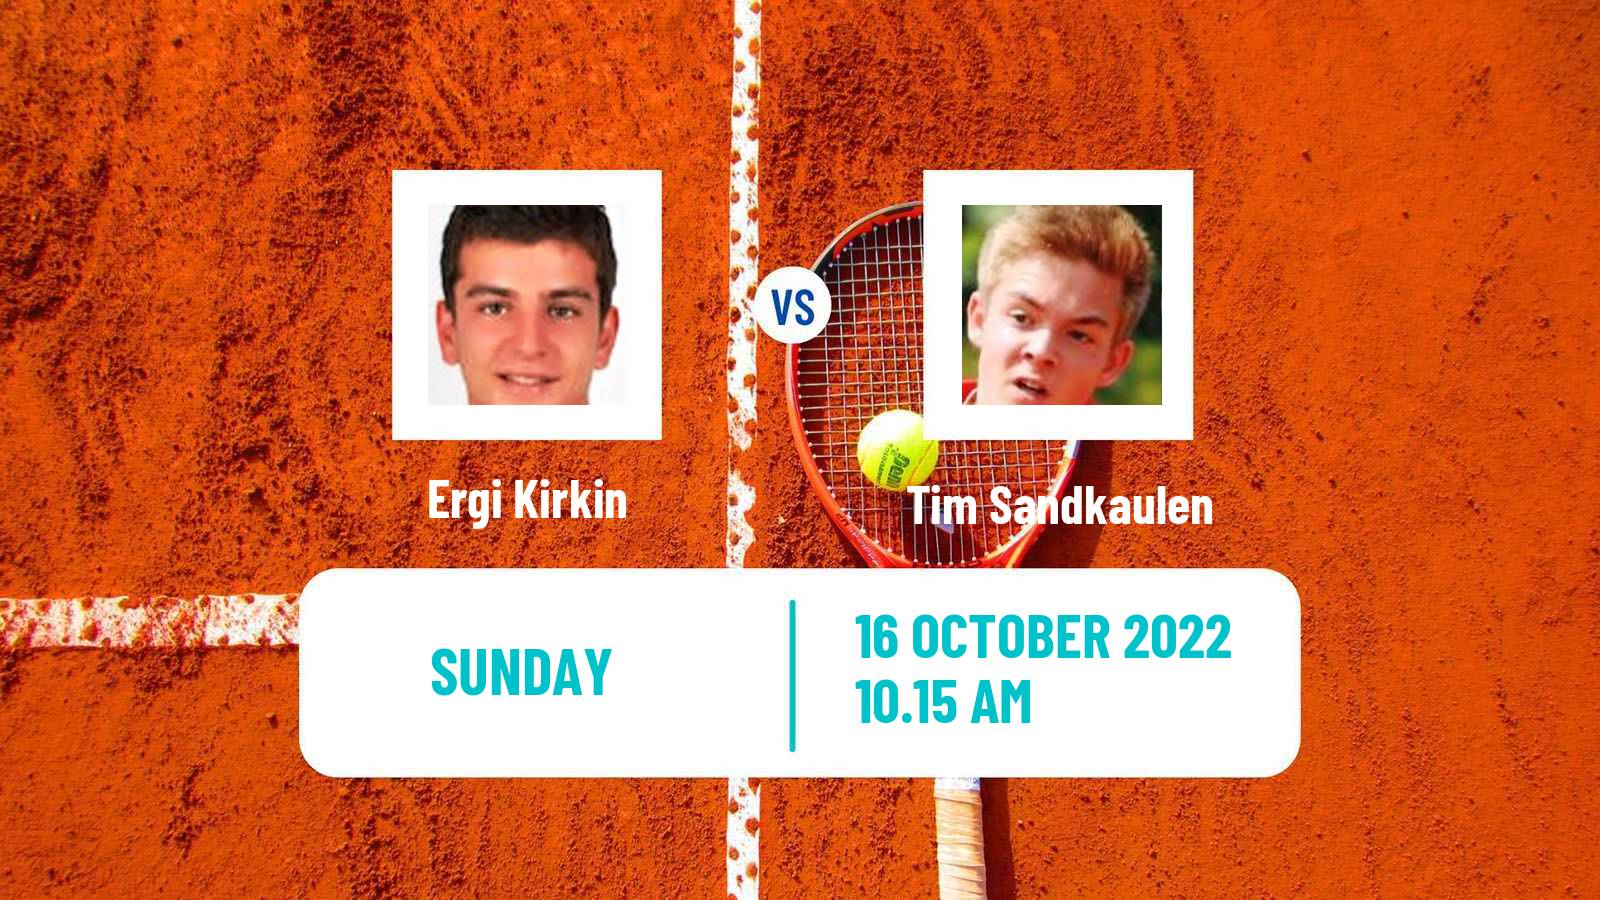 Tennis ATP Challenger Ergi Kirkin - Tim Sandkaulen